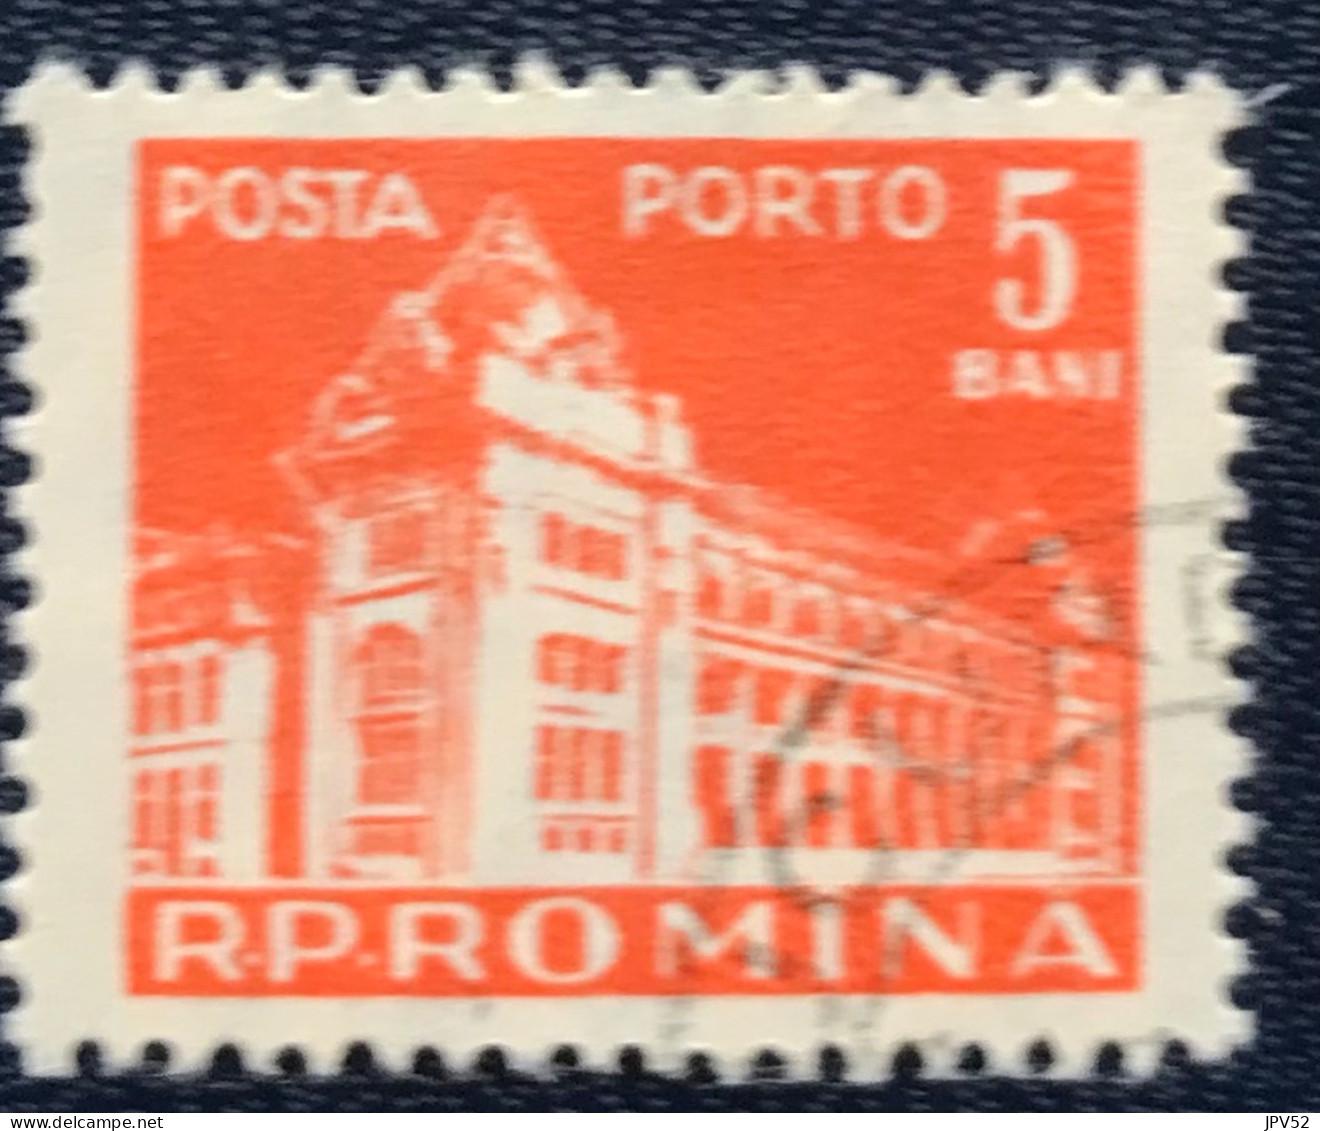 Romana - Roemenië - C14/54 - 1957 - (°)used - Michel 102 - Postkantoor - Postage Due